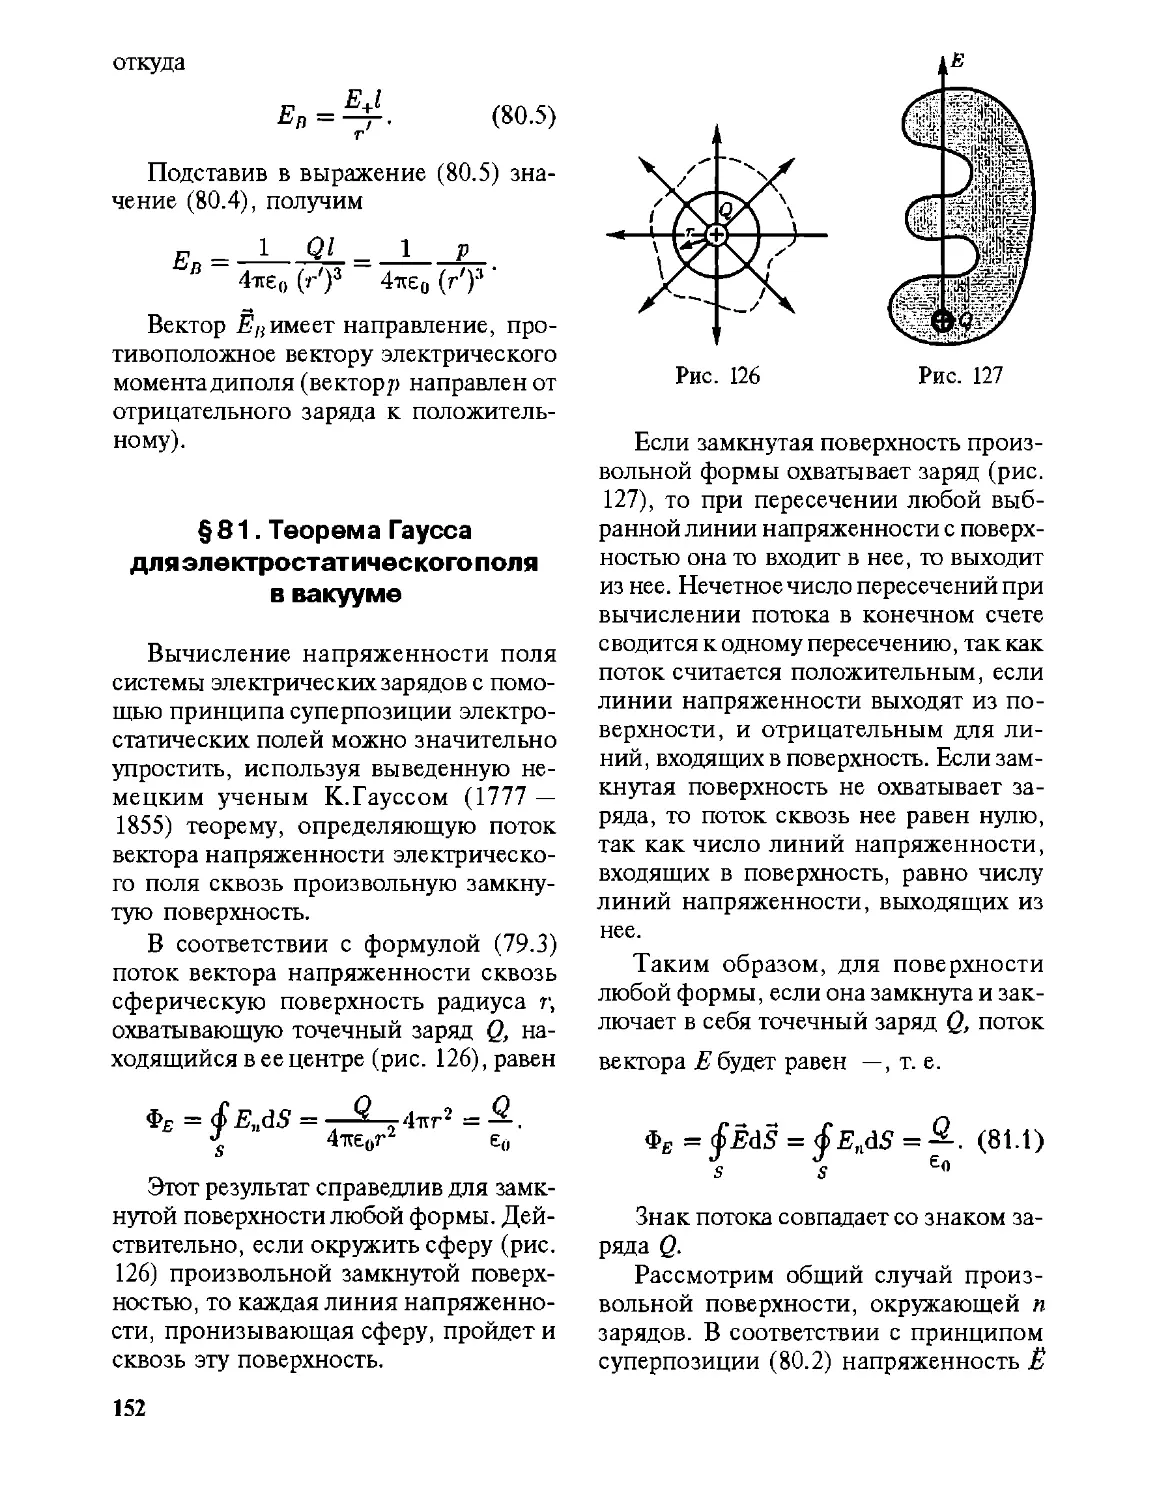 § 81. Теорема Гаусса для электростатического поля в вакууме